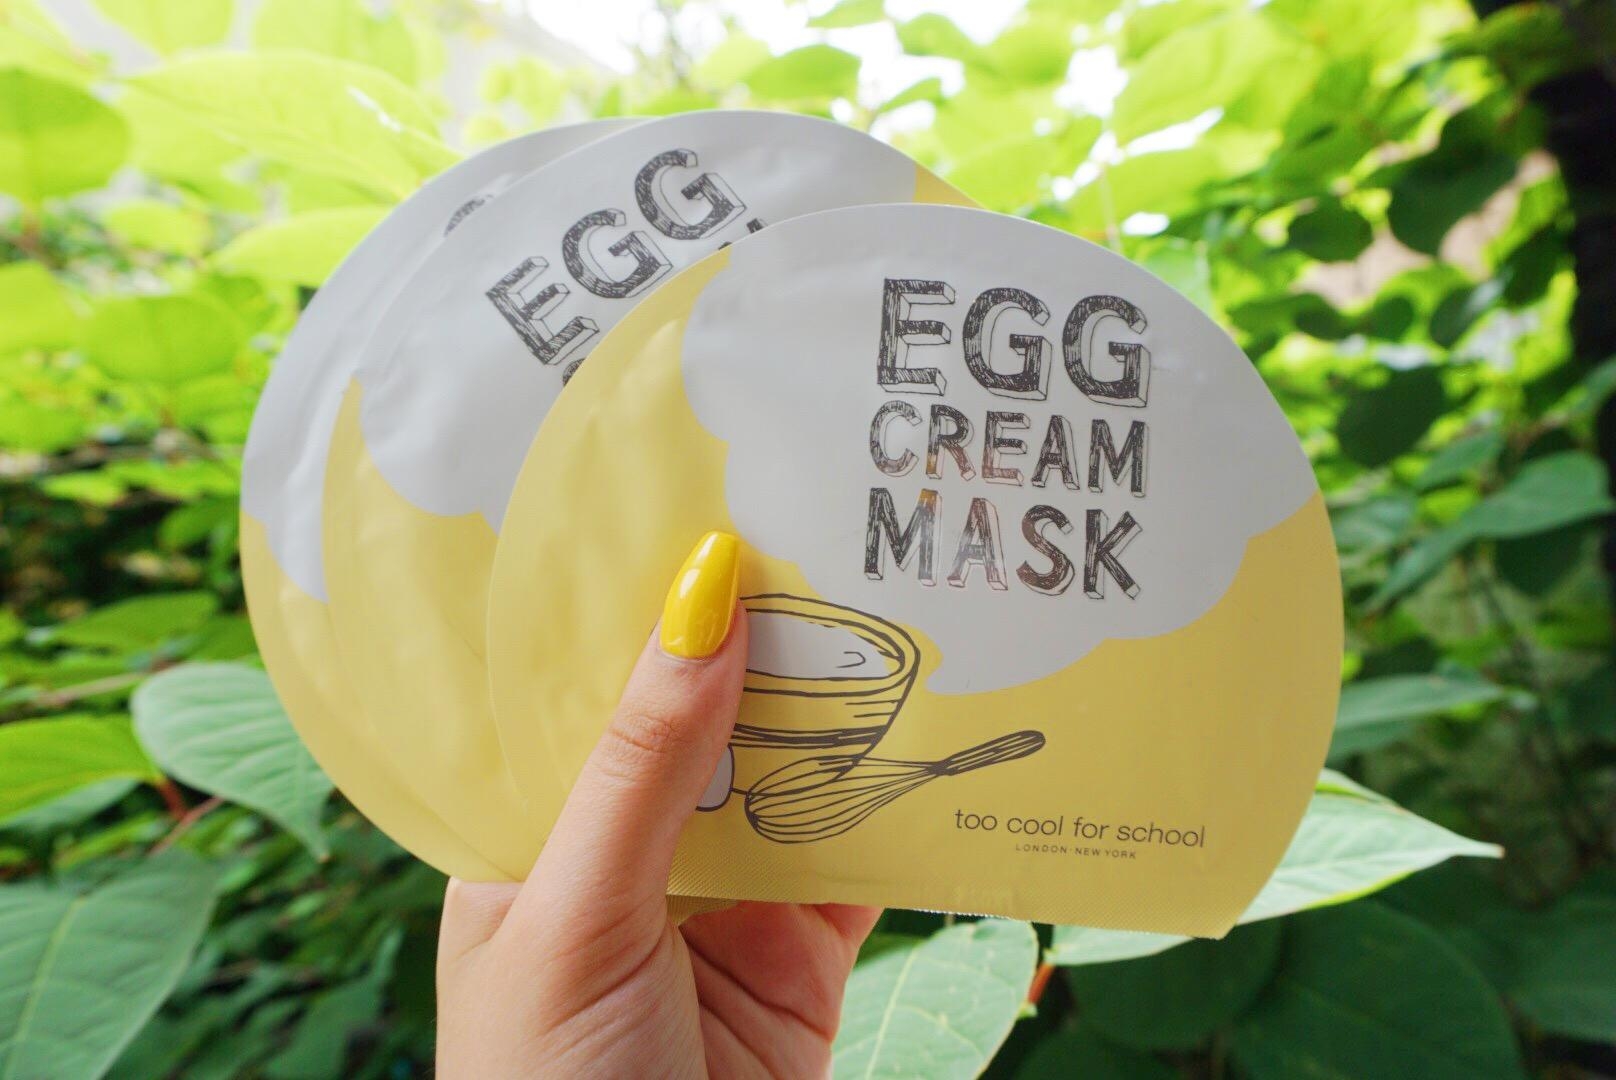 Яичная маска отзывы. Too cool for School маска яичная. Too cool for School маски тканевые. Маска для лица Egg Cream Mask. Яичная маска корейская.